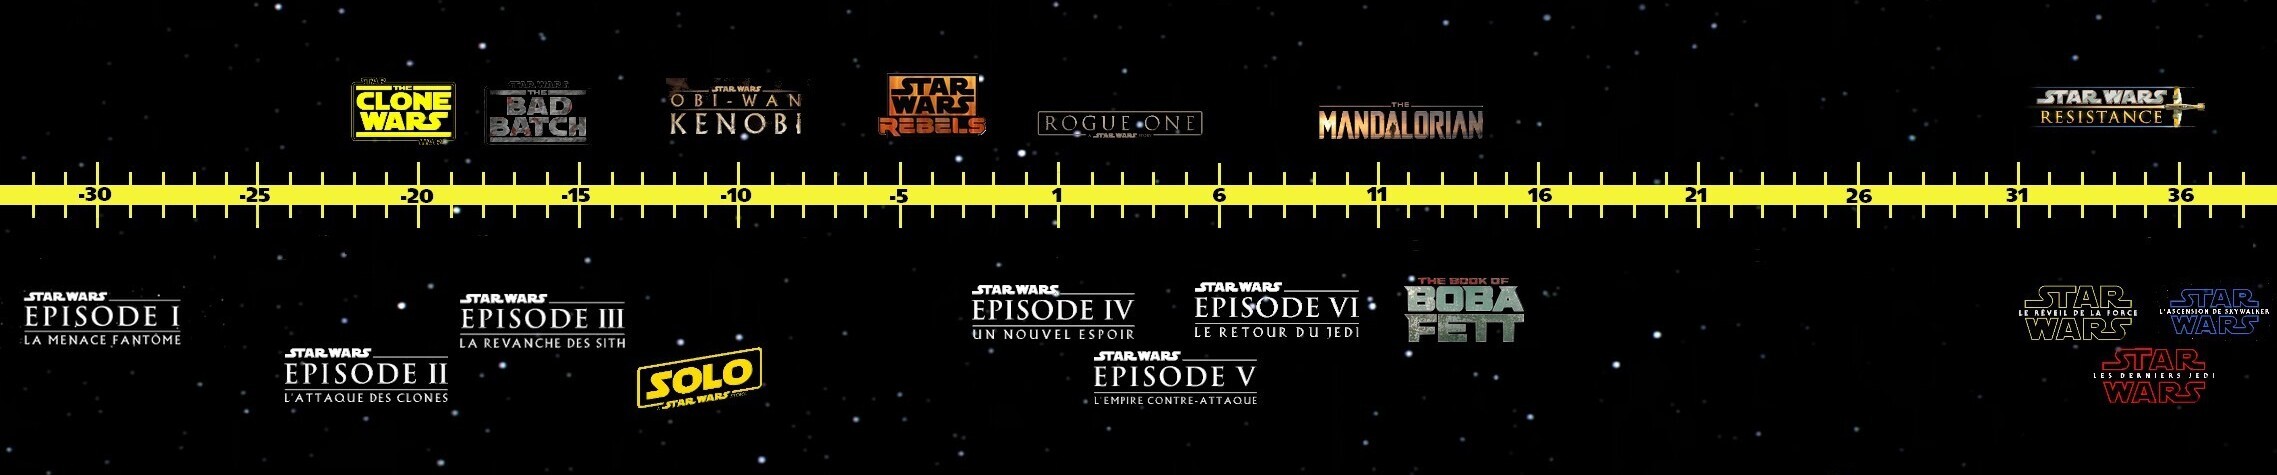 Série The Mandalorian chronologie Star Wars